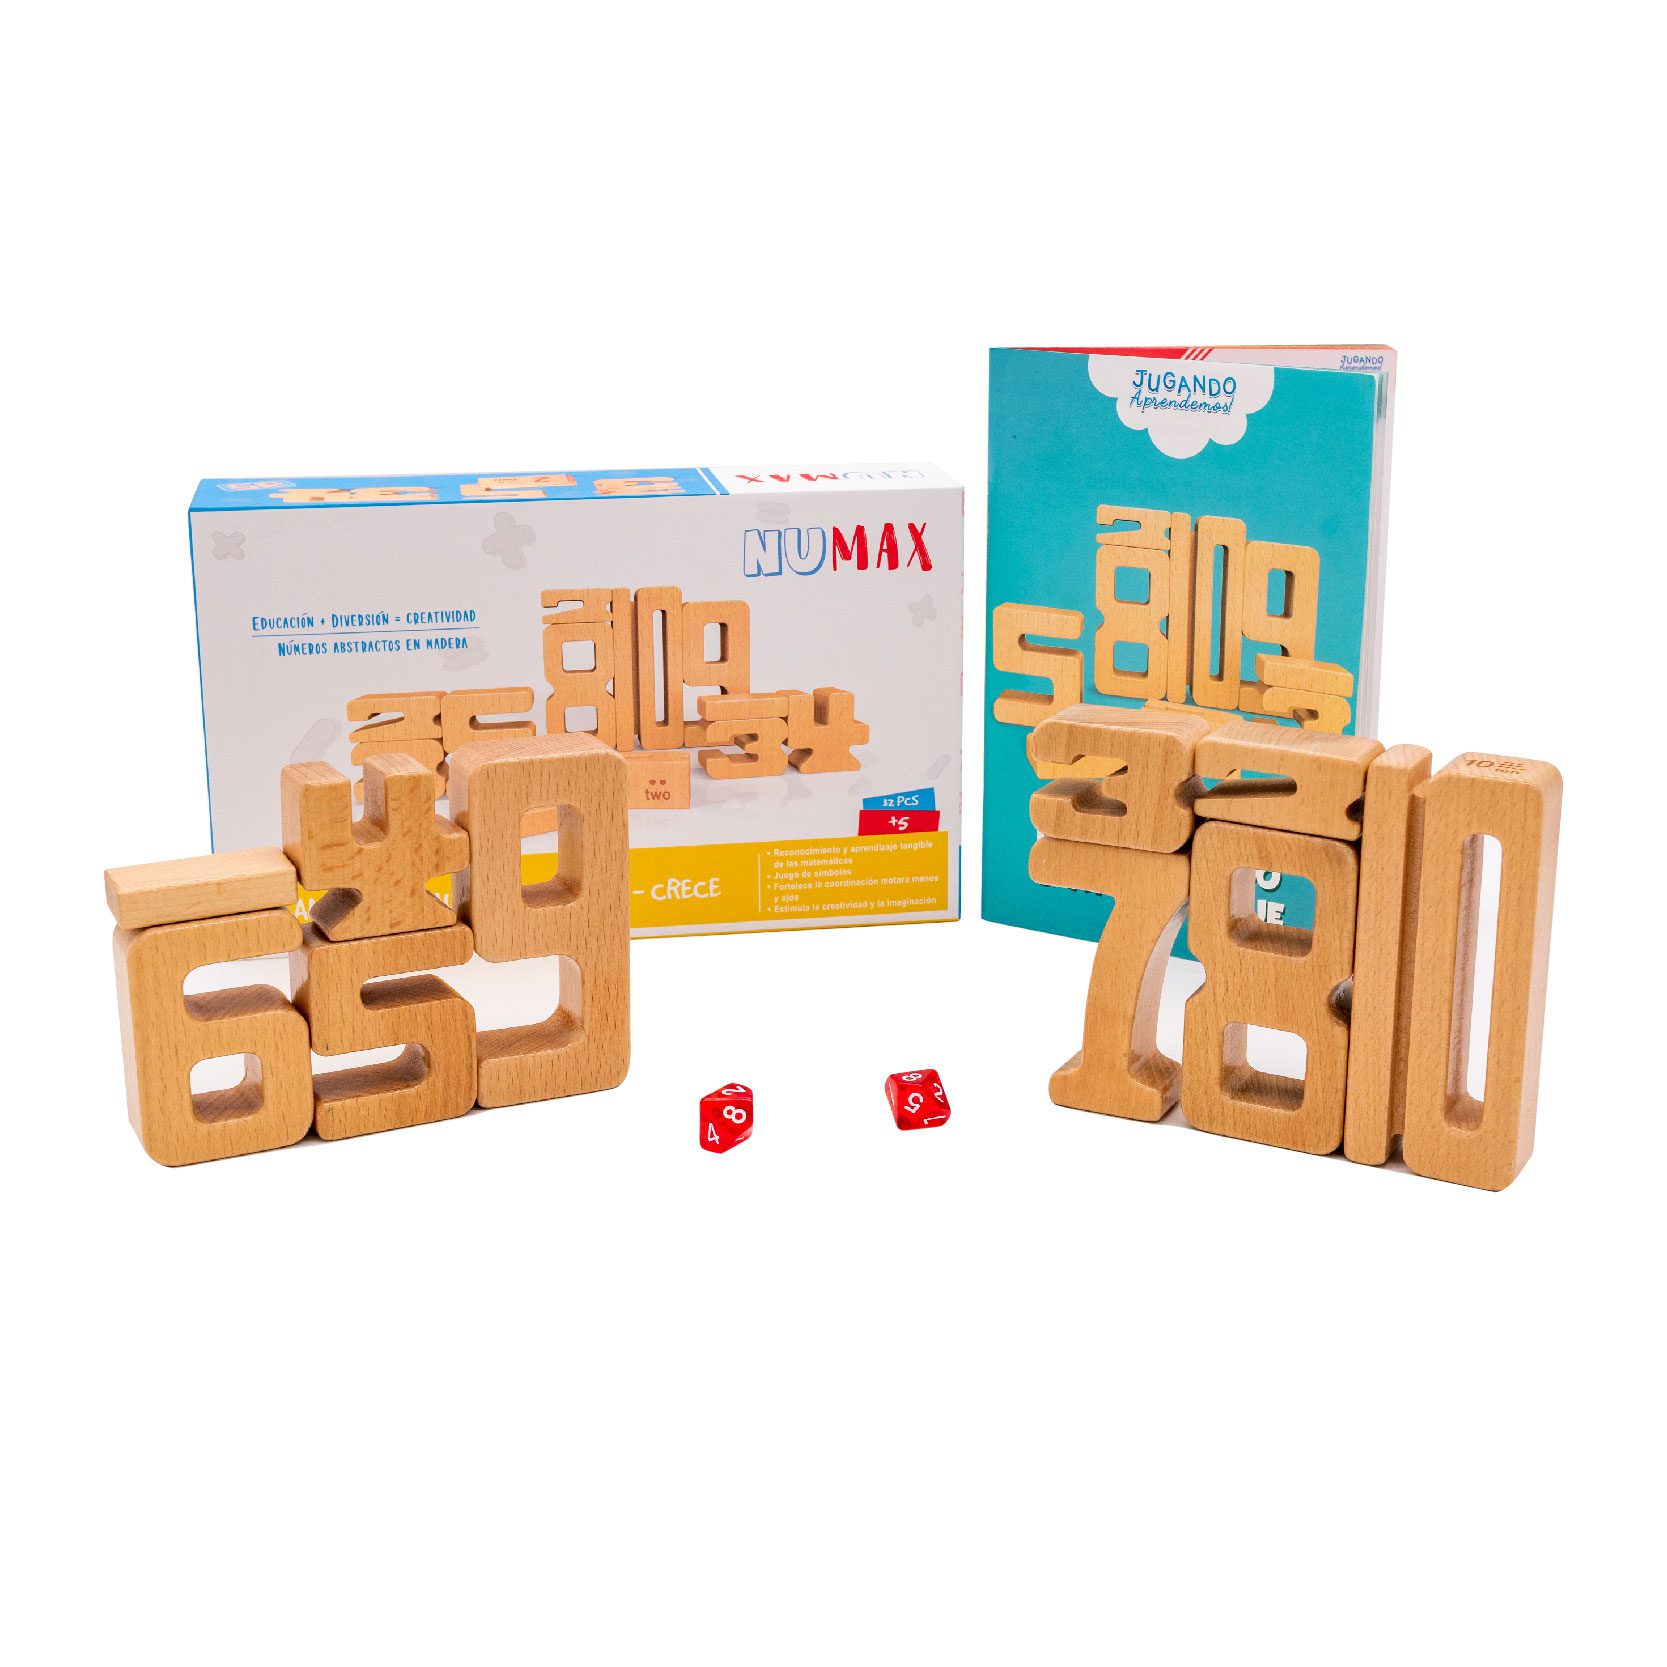 Jugar a puzles estimula a los niños en el aprendizaje de las matemáticas